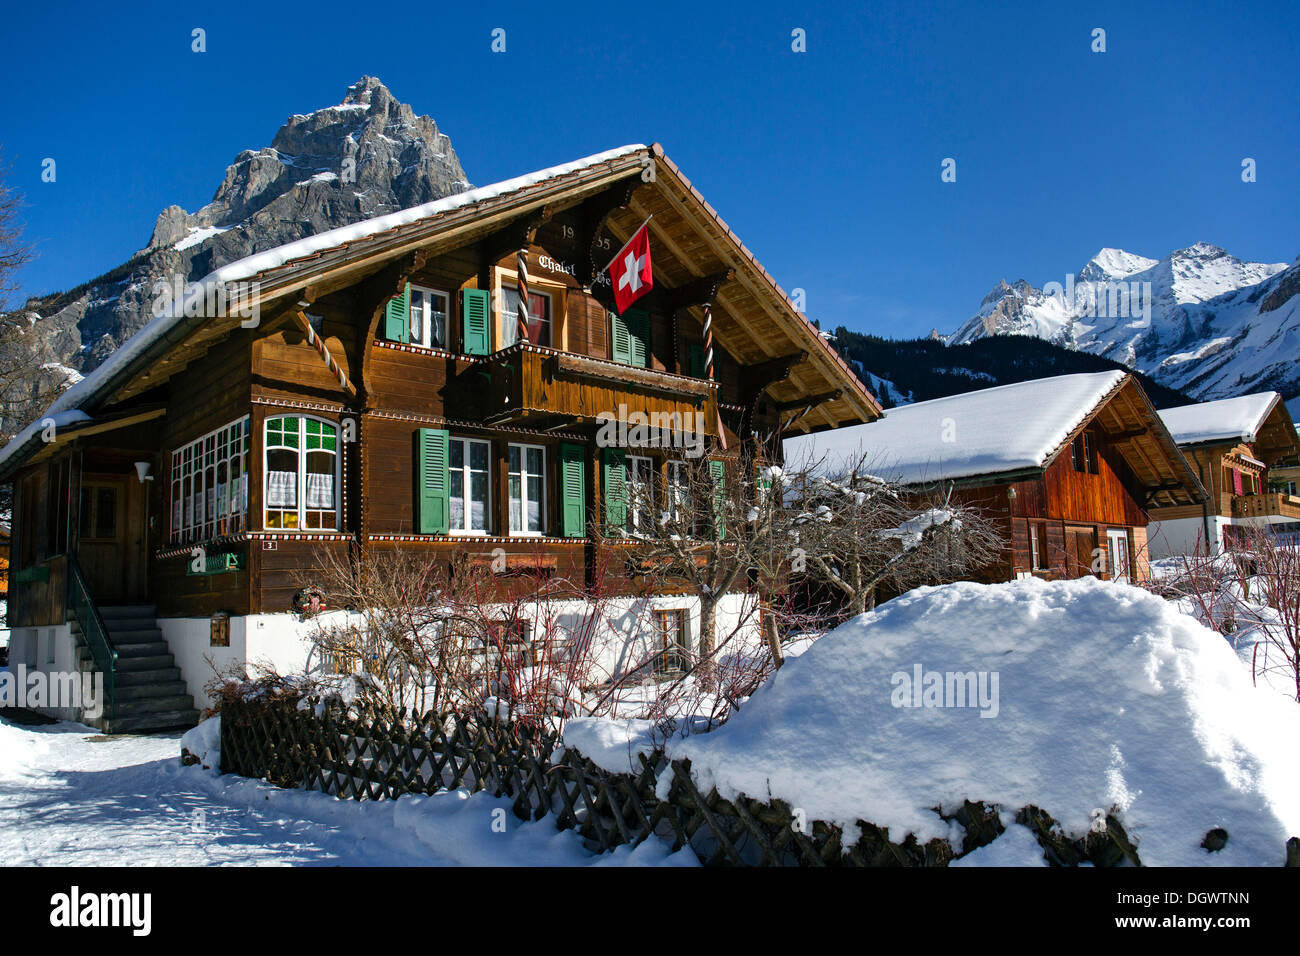 Chalet con una bandiera svizzera, Bire montagna sulla sinistra, Blueemlisalp massiccio sulla destra, paesaggio invernale, Alpi bernesi Foto Stock